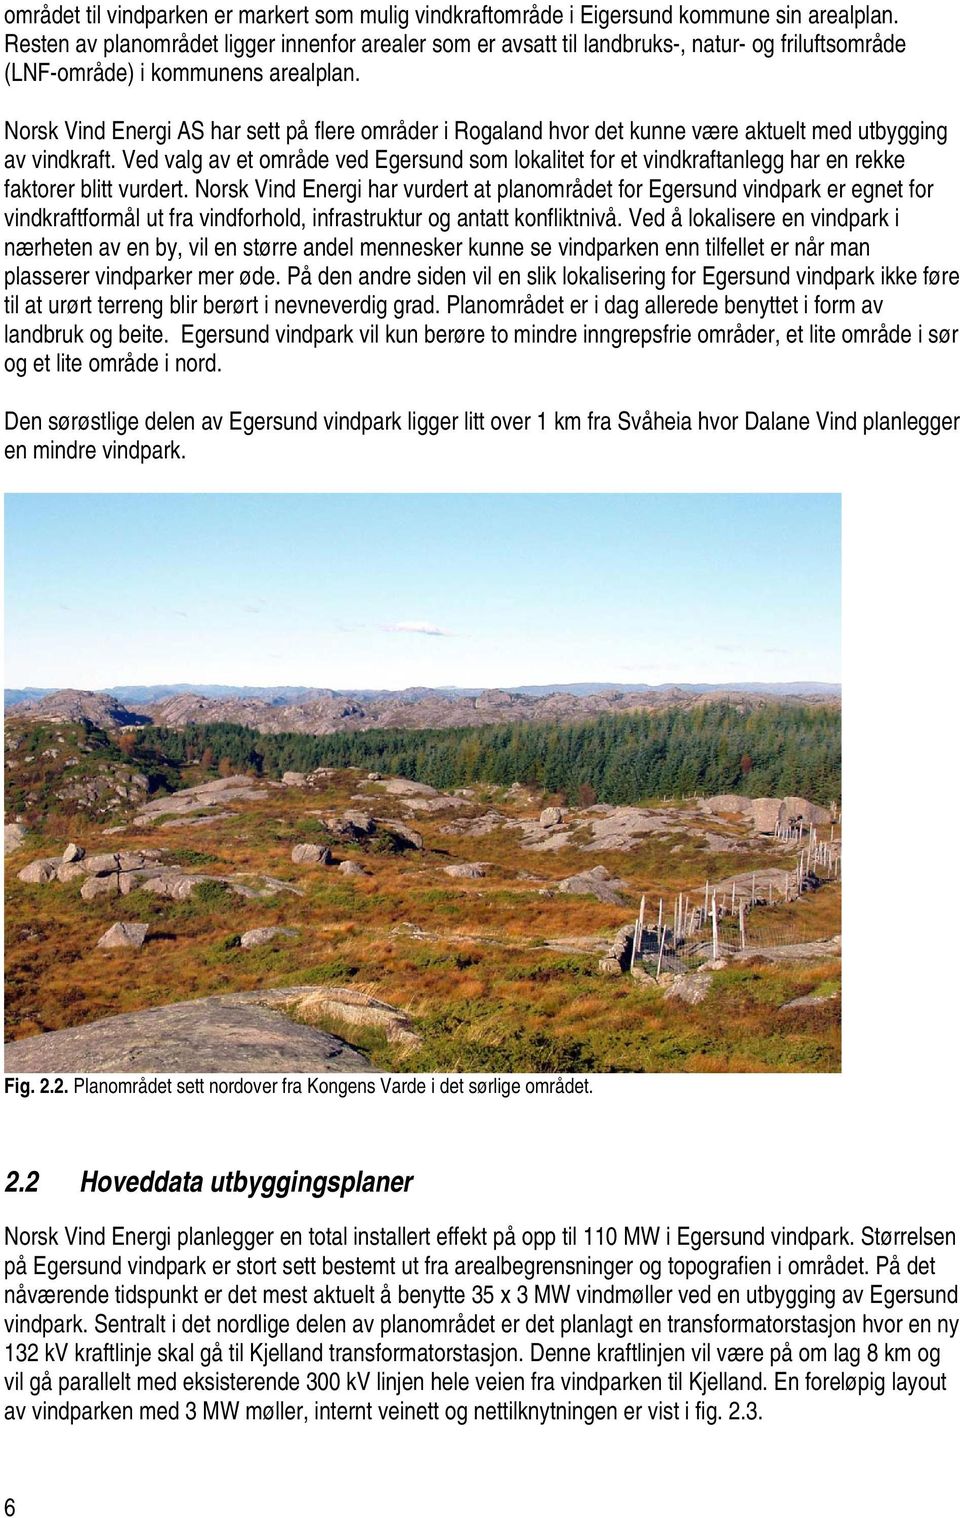 Norsk Vind Energi AS har sett på flere områder i Rogaland hvor det kunne være aktuelt med utbygging av vindkraft.